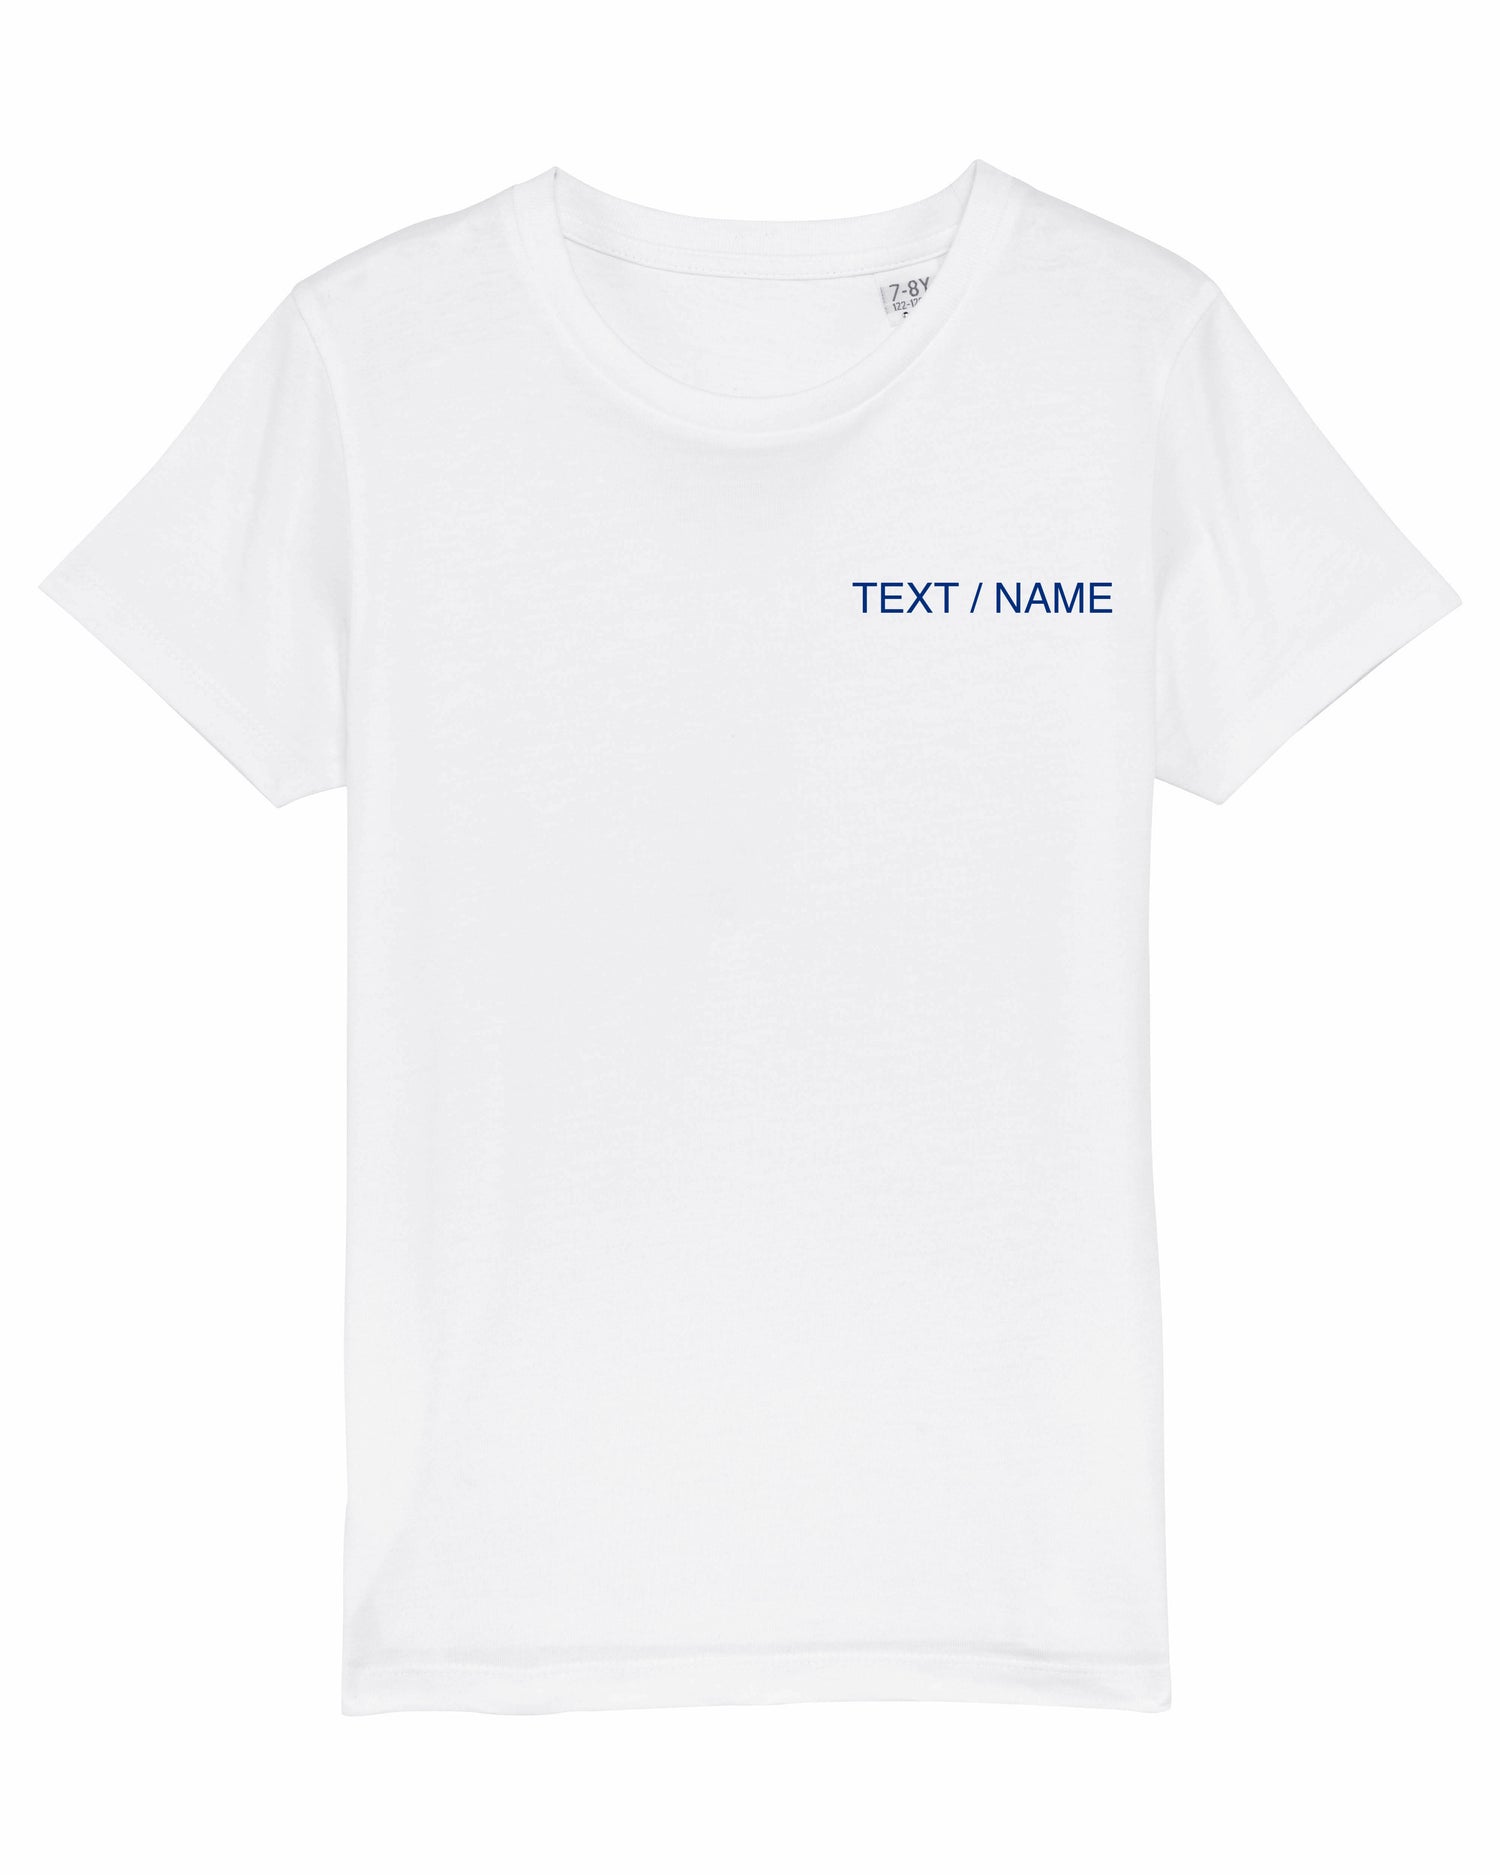 MINNIE / MARIE – YOURSELF T-Shirt IT DESIGN weiß Mini-Version (Kids)